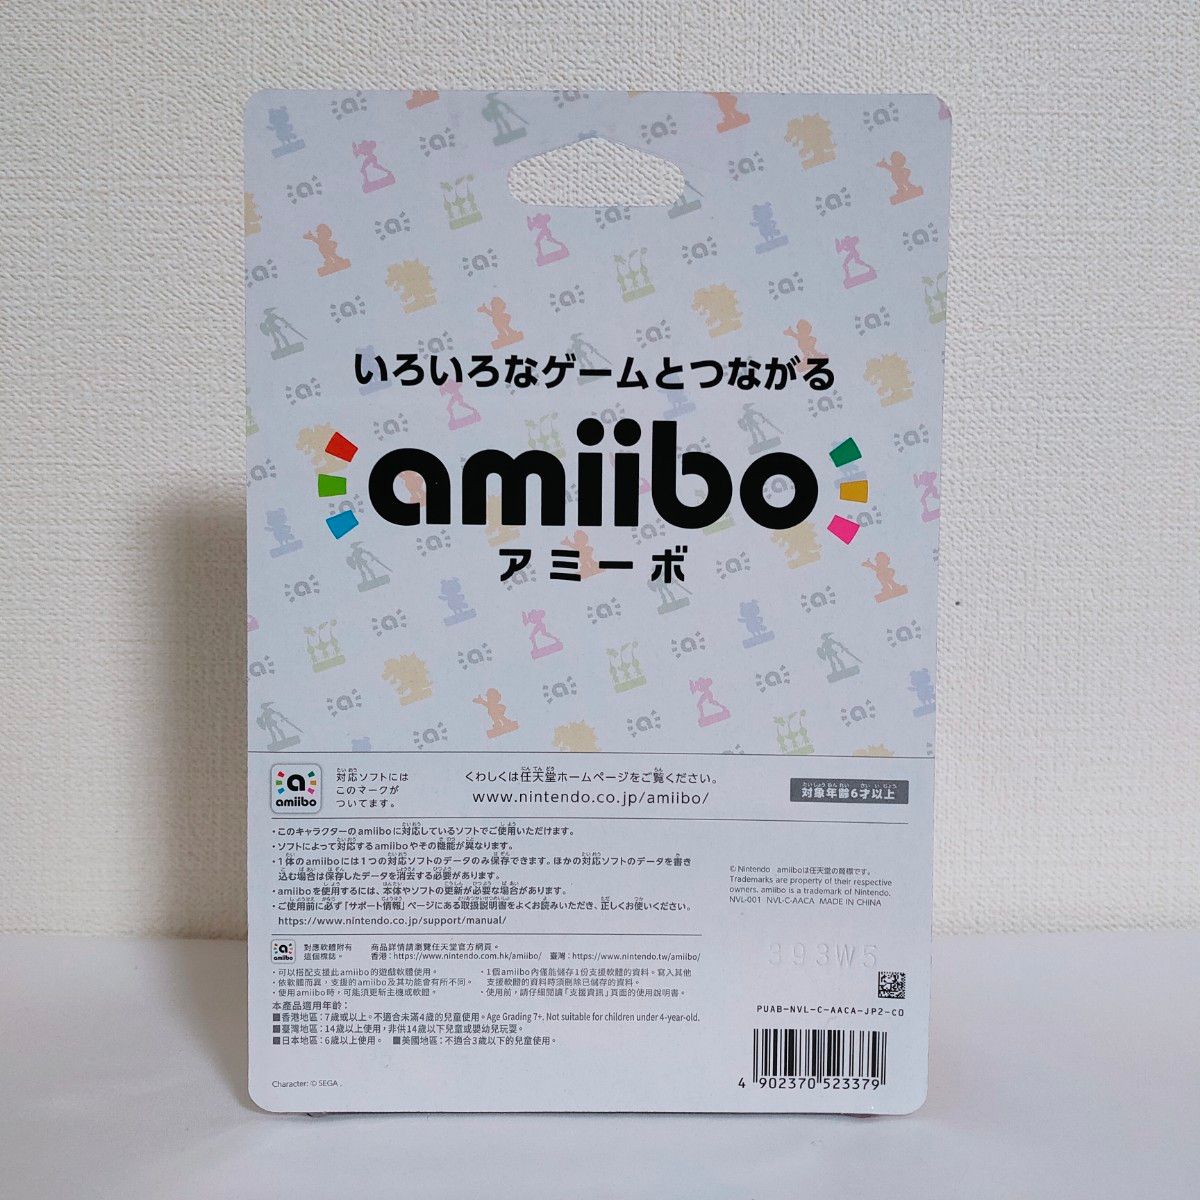 【送料無料】アミーボ amiibo  ソニック (大乱闘スマッシュブラザーズシリーズ)